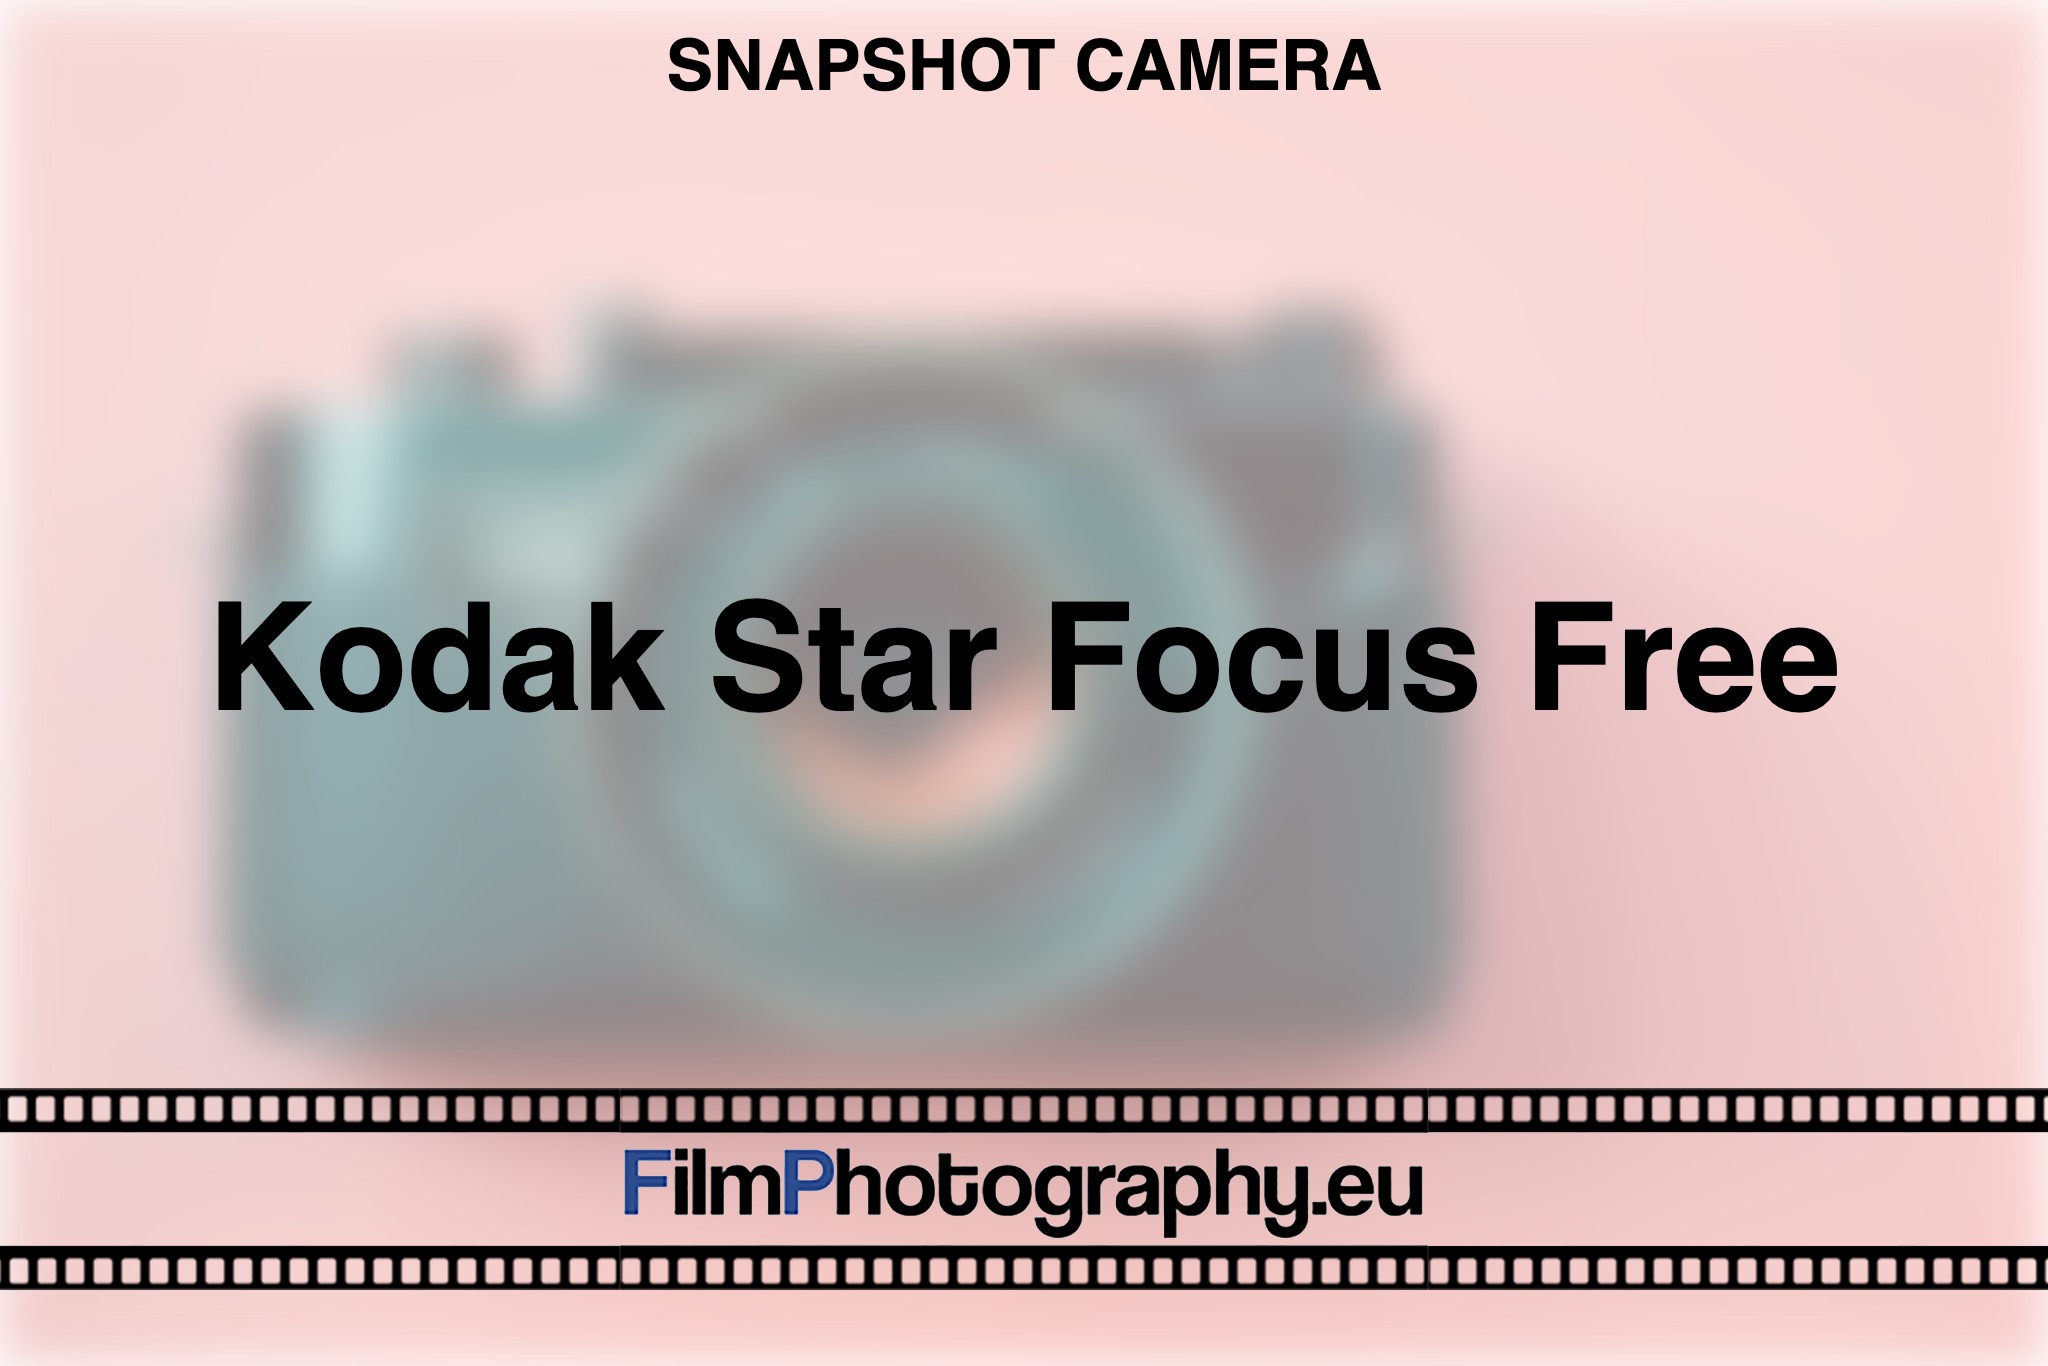 kodak-star-focus-free-snapshot-camera-bnv